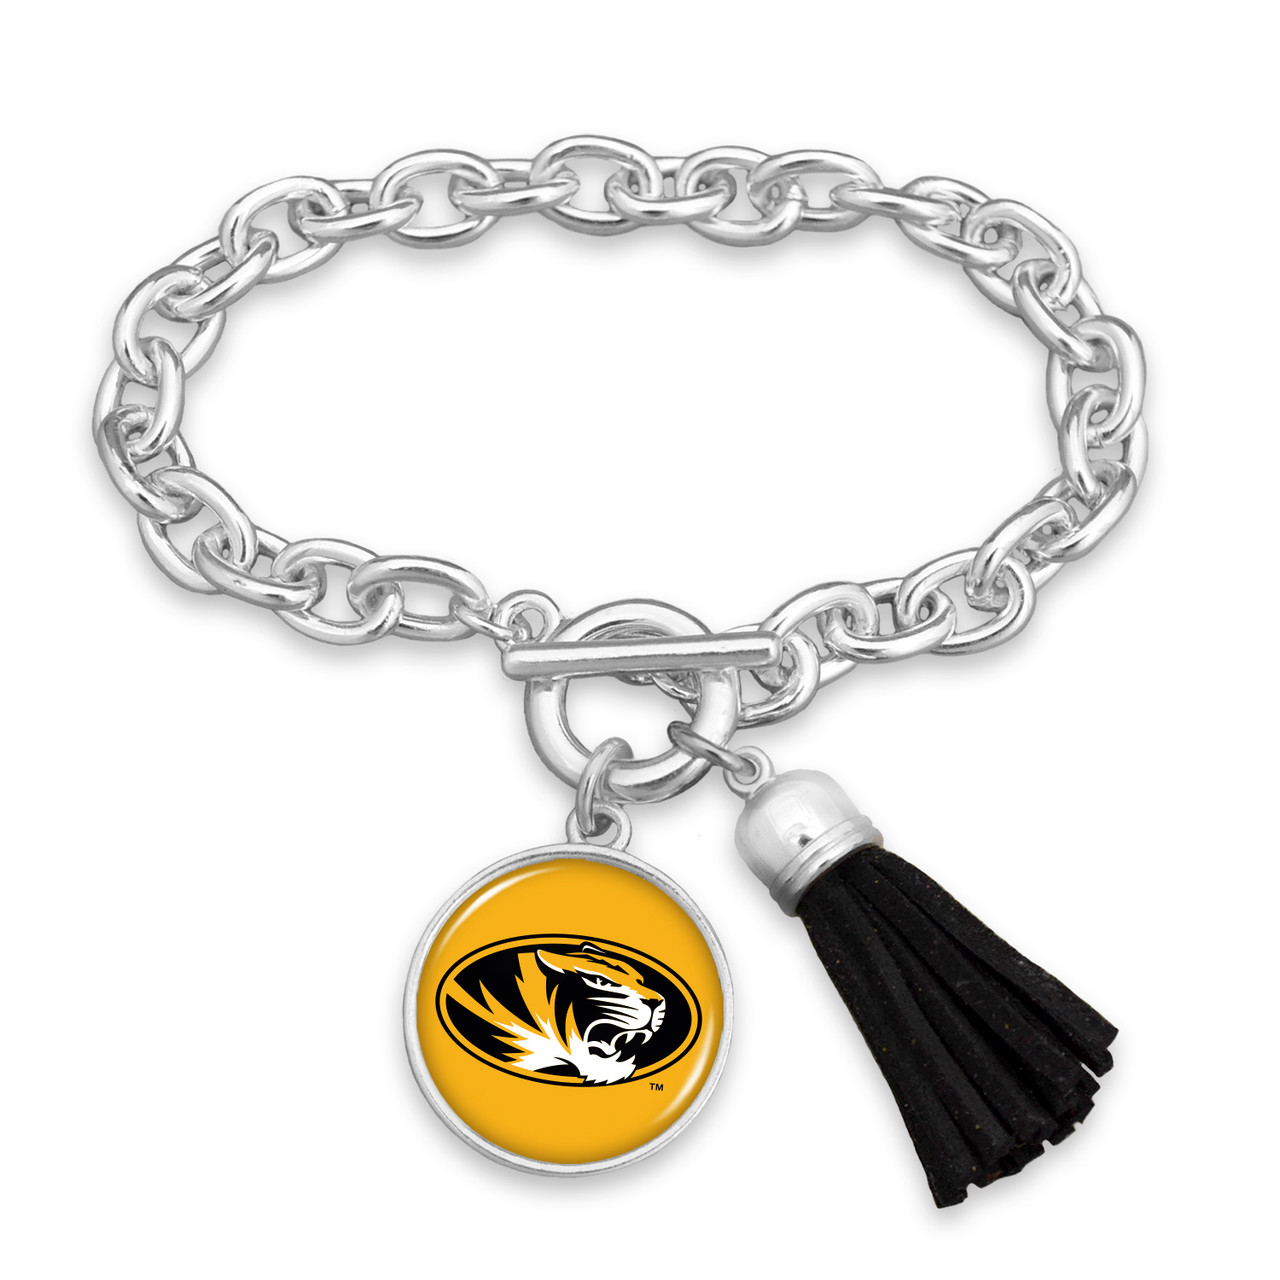 Missouri Tigers Bracelet- Team Color Tassel